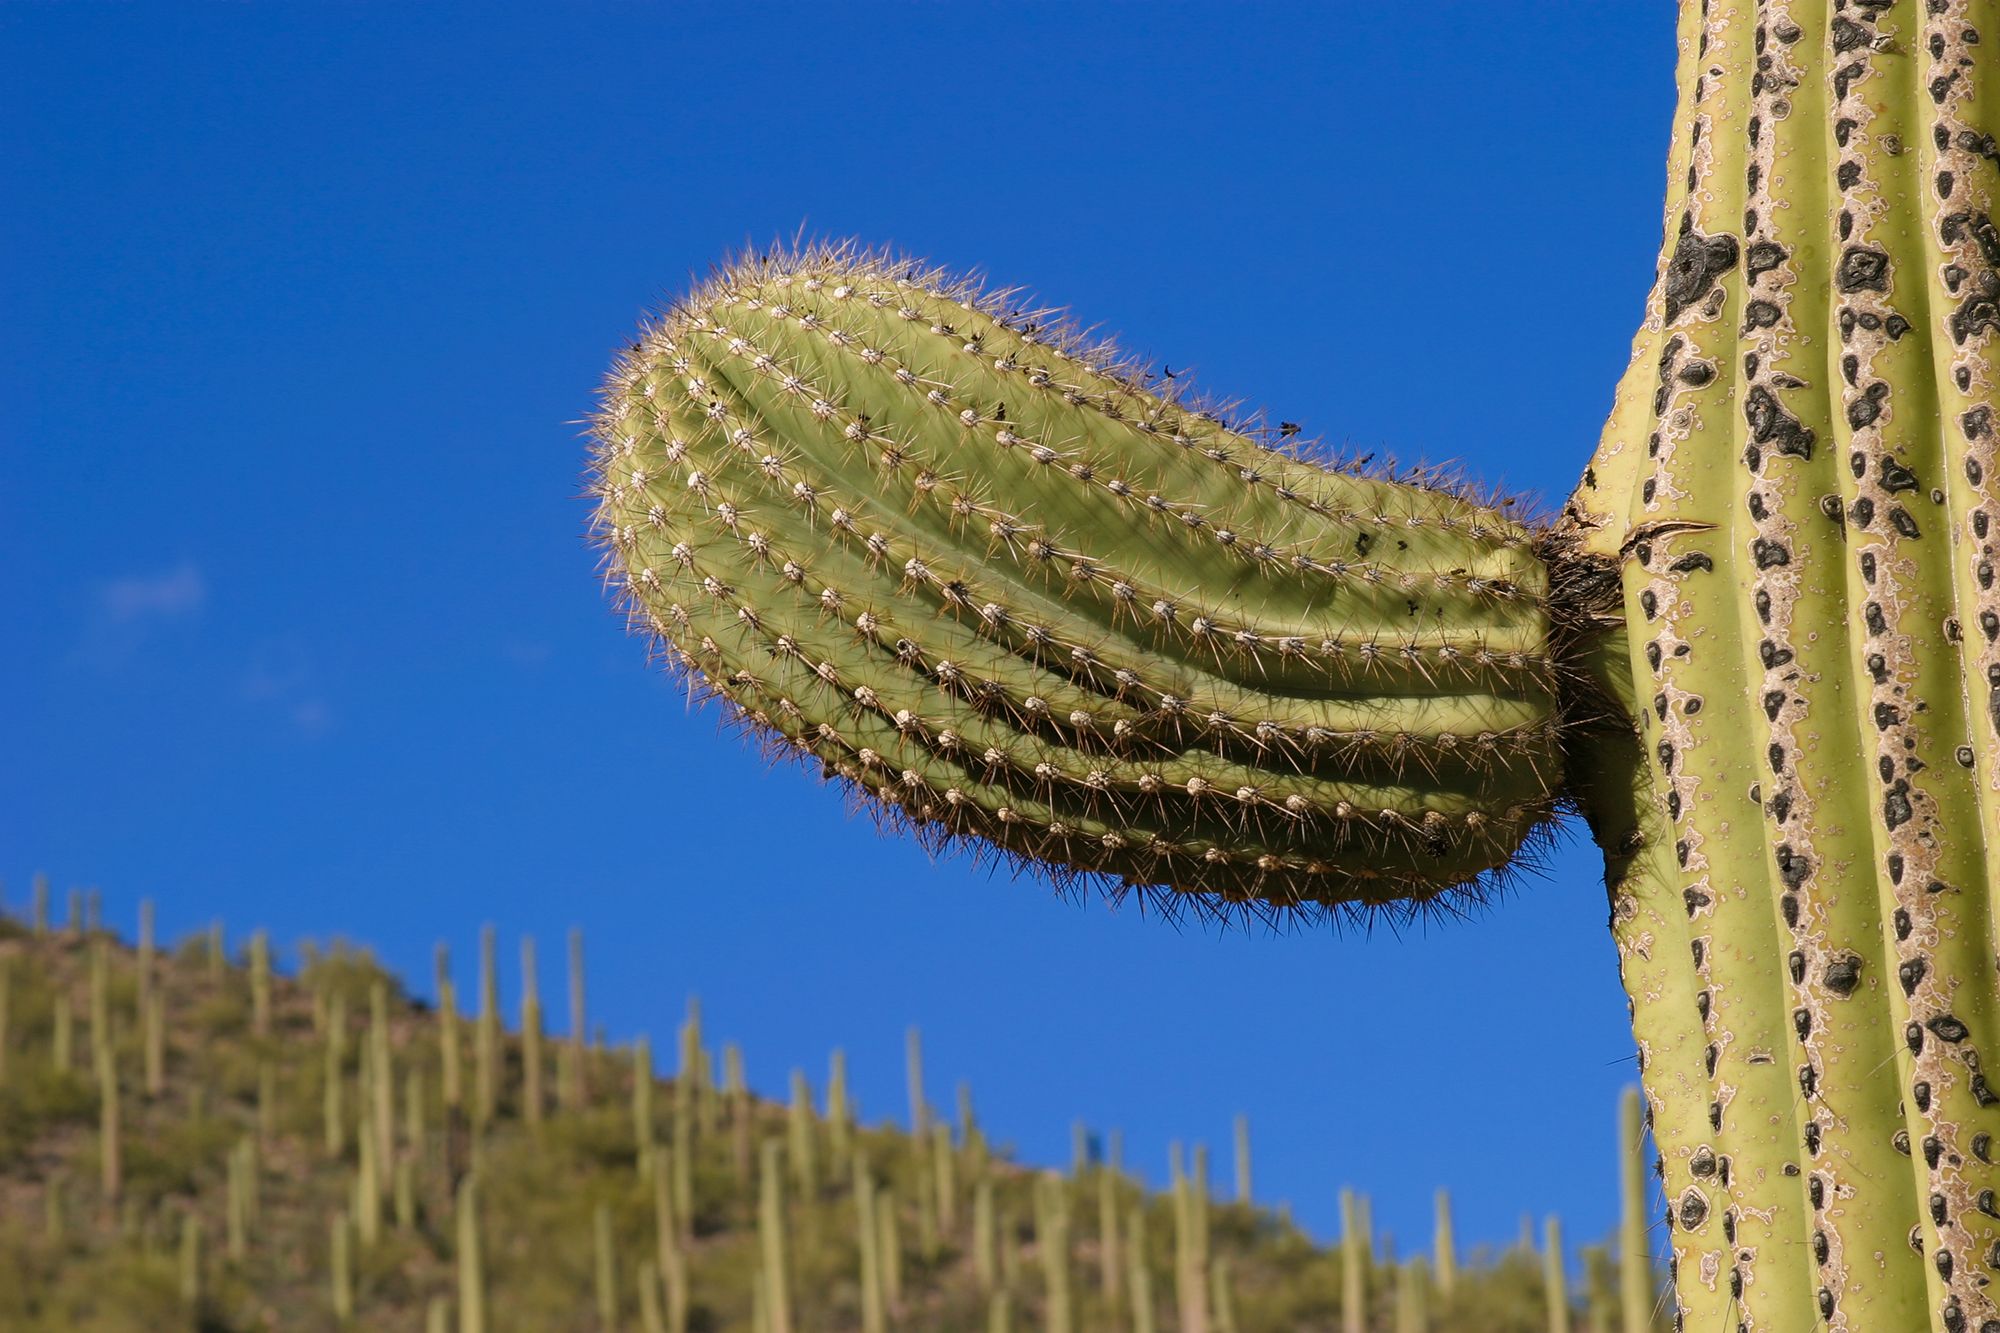 Ast eines Kaktus, der aussieht wie ein Penis mit Penisring